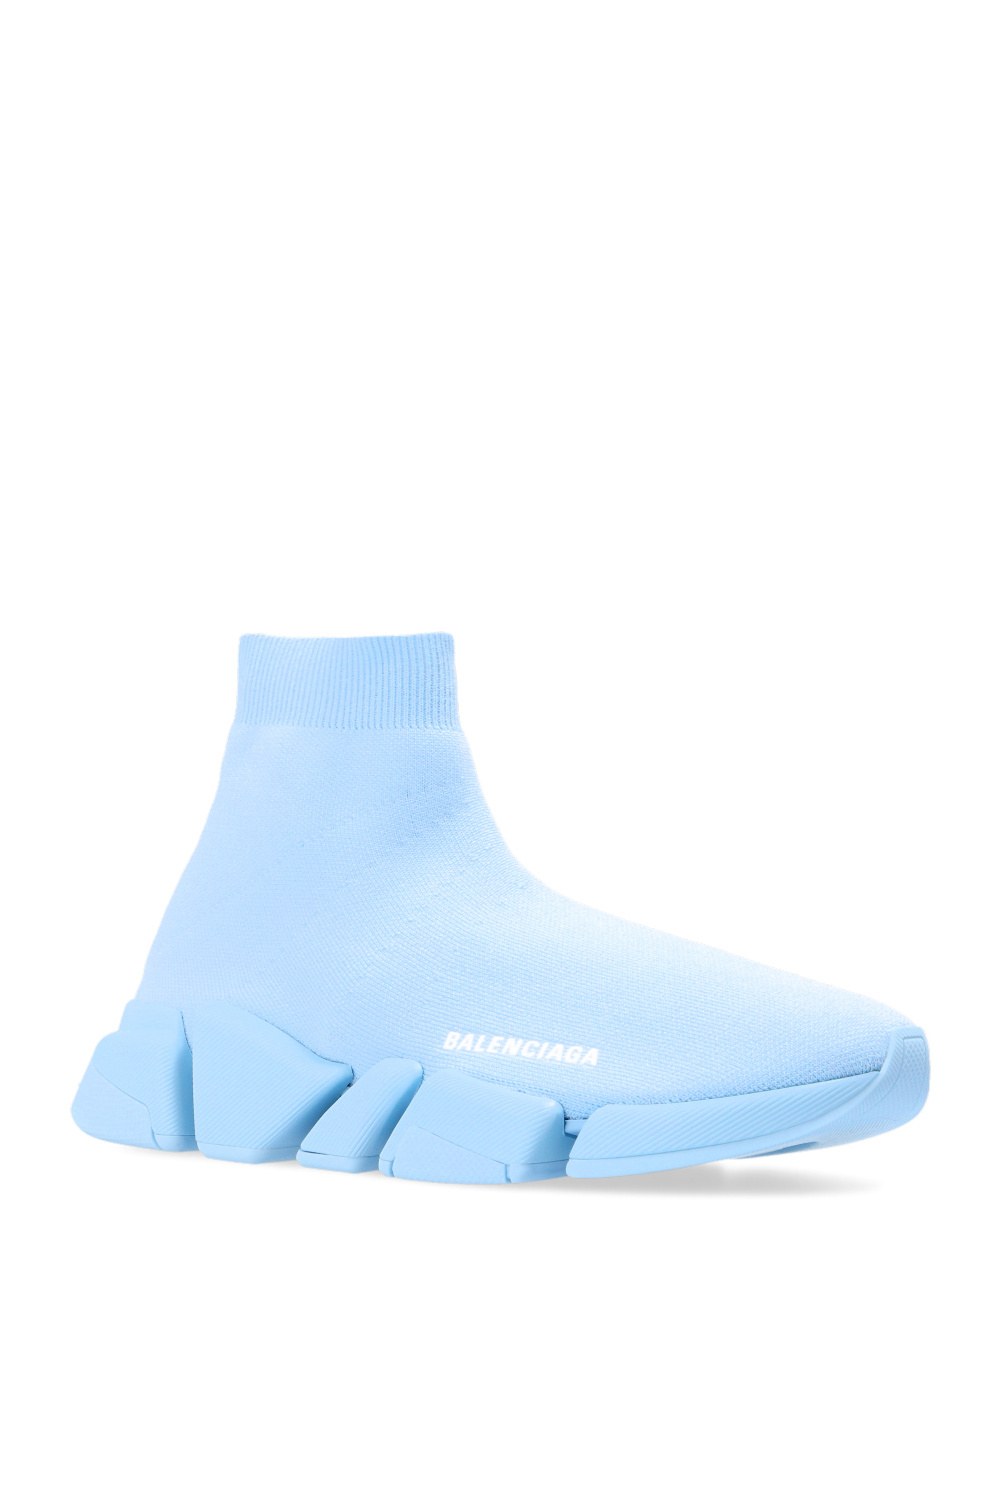 lærer industri Squeak Speed 2.0 LT' sock sneakers Balenciaga - Sos-togoShops Canada